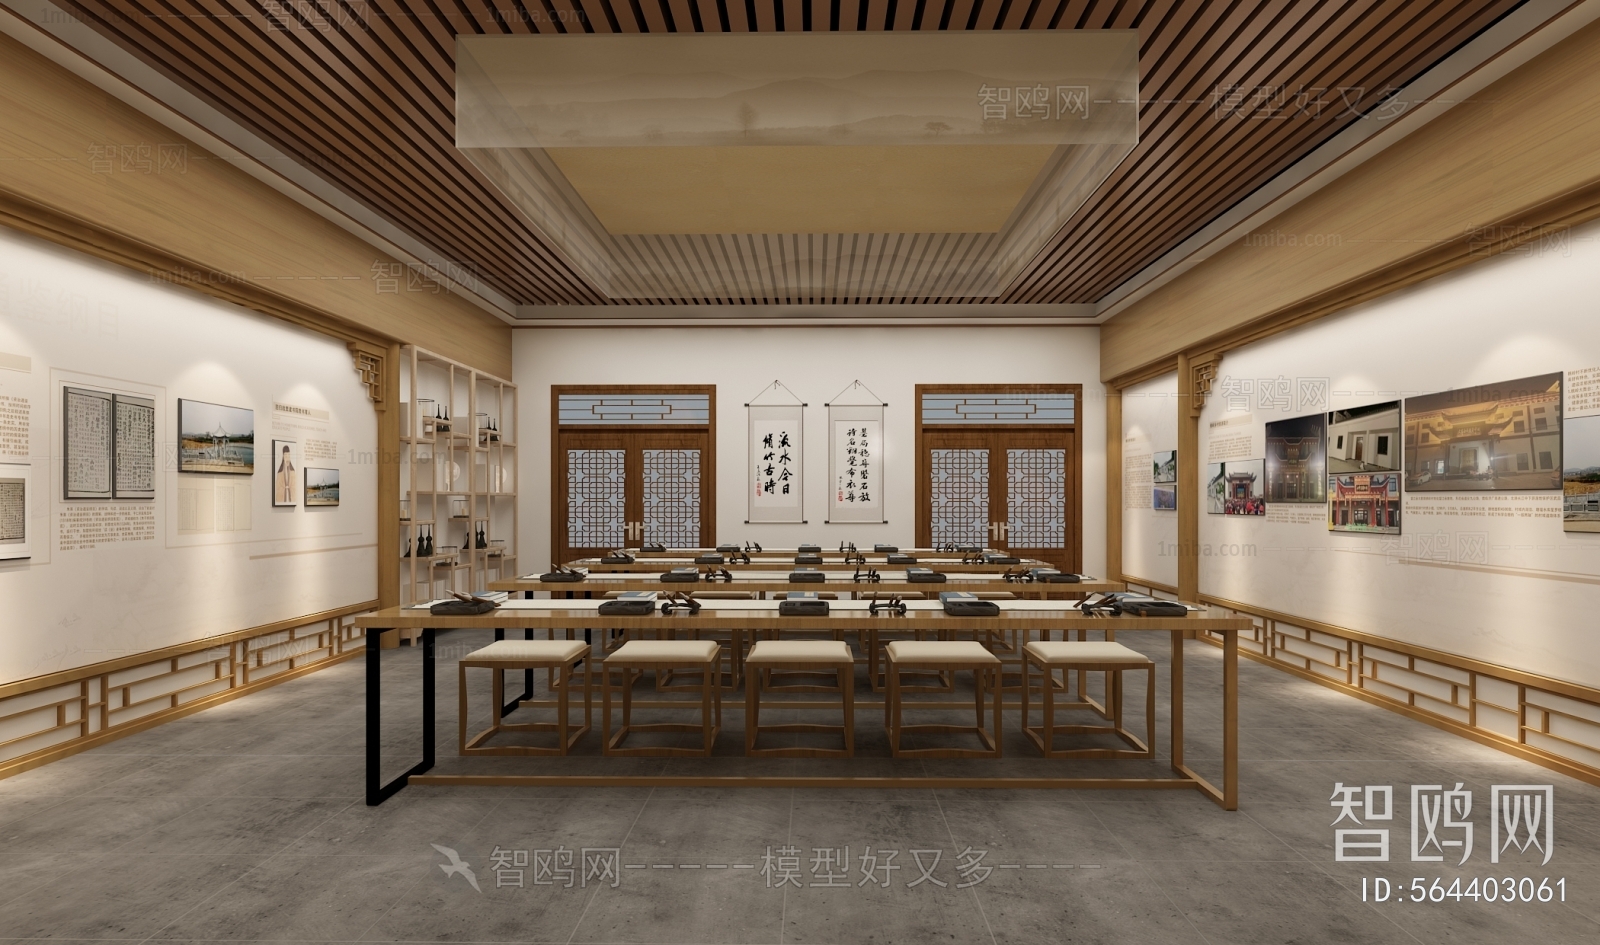 新中式国学教室